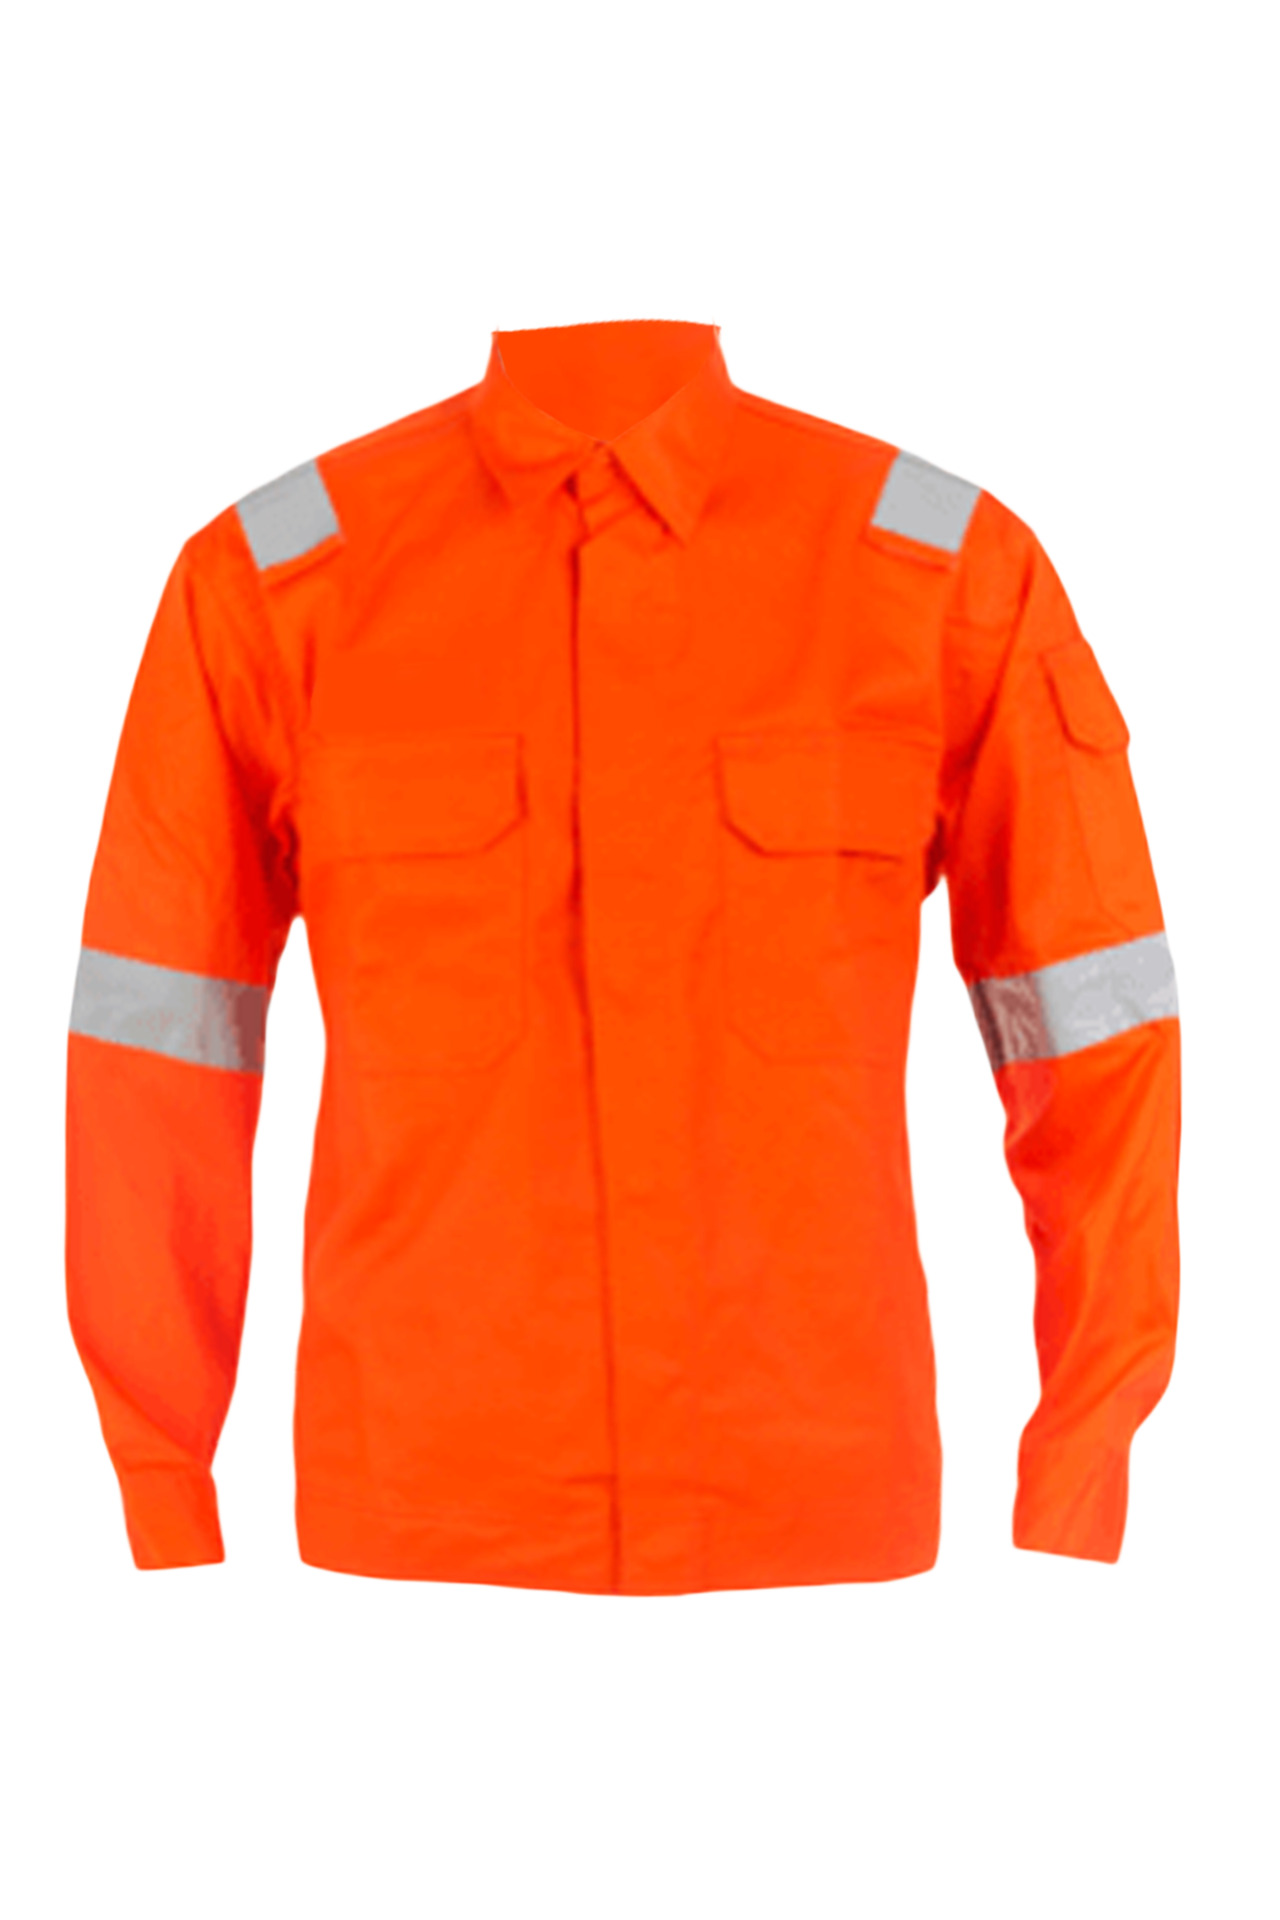 Orange Body Protection suit by Delta Plus